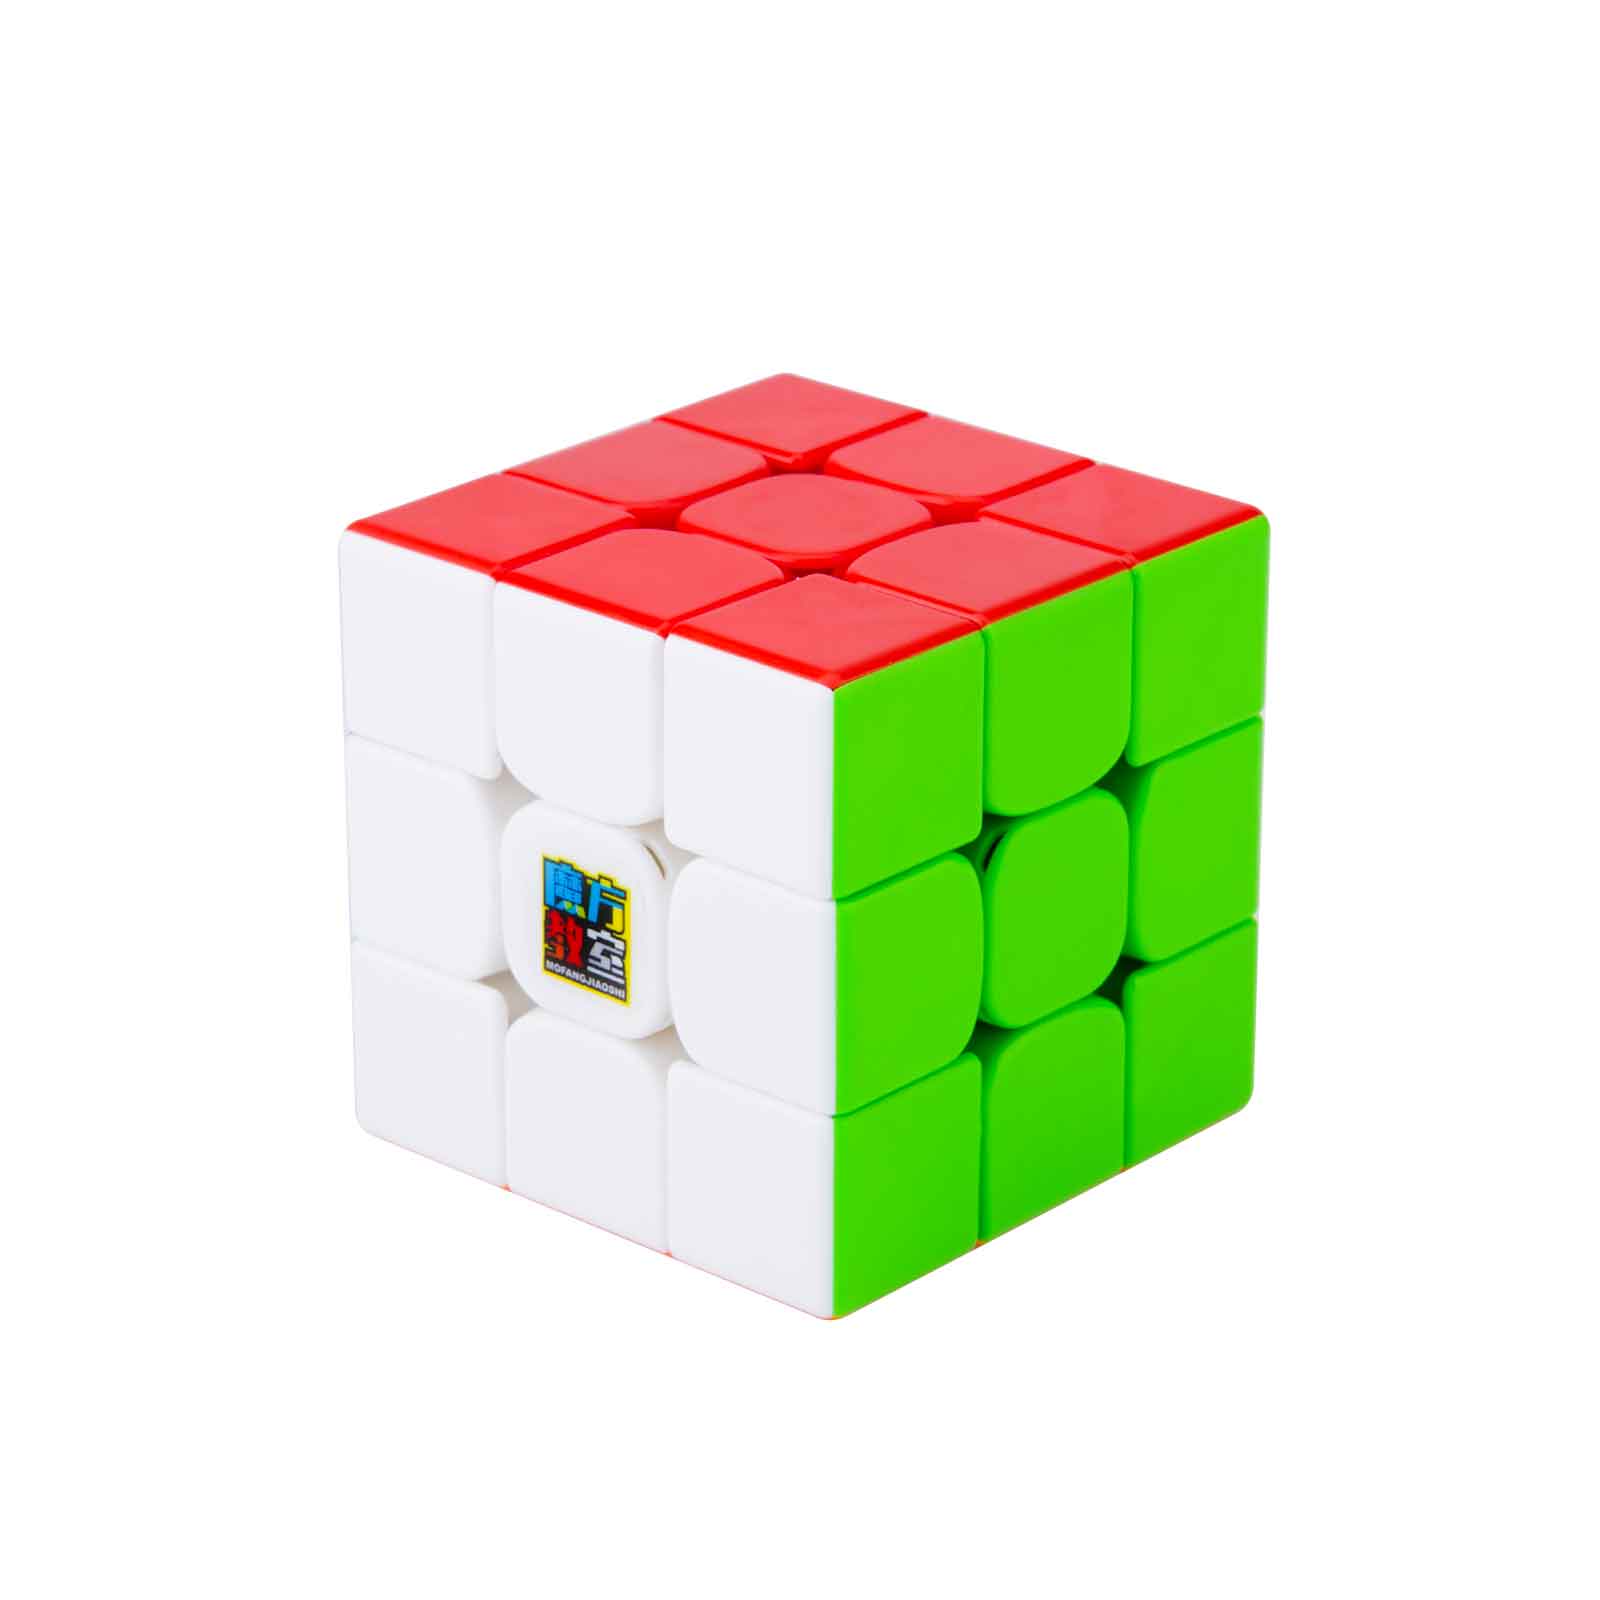 CuberMod MoYu MoFang JiaoShi RS3 M 3x3 Speed Cube 2020